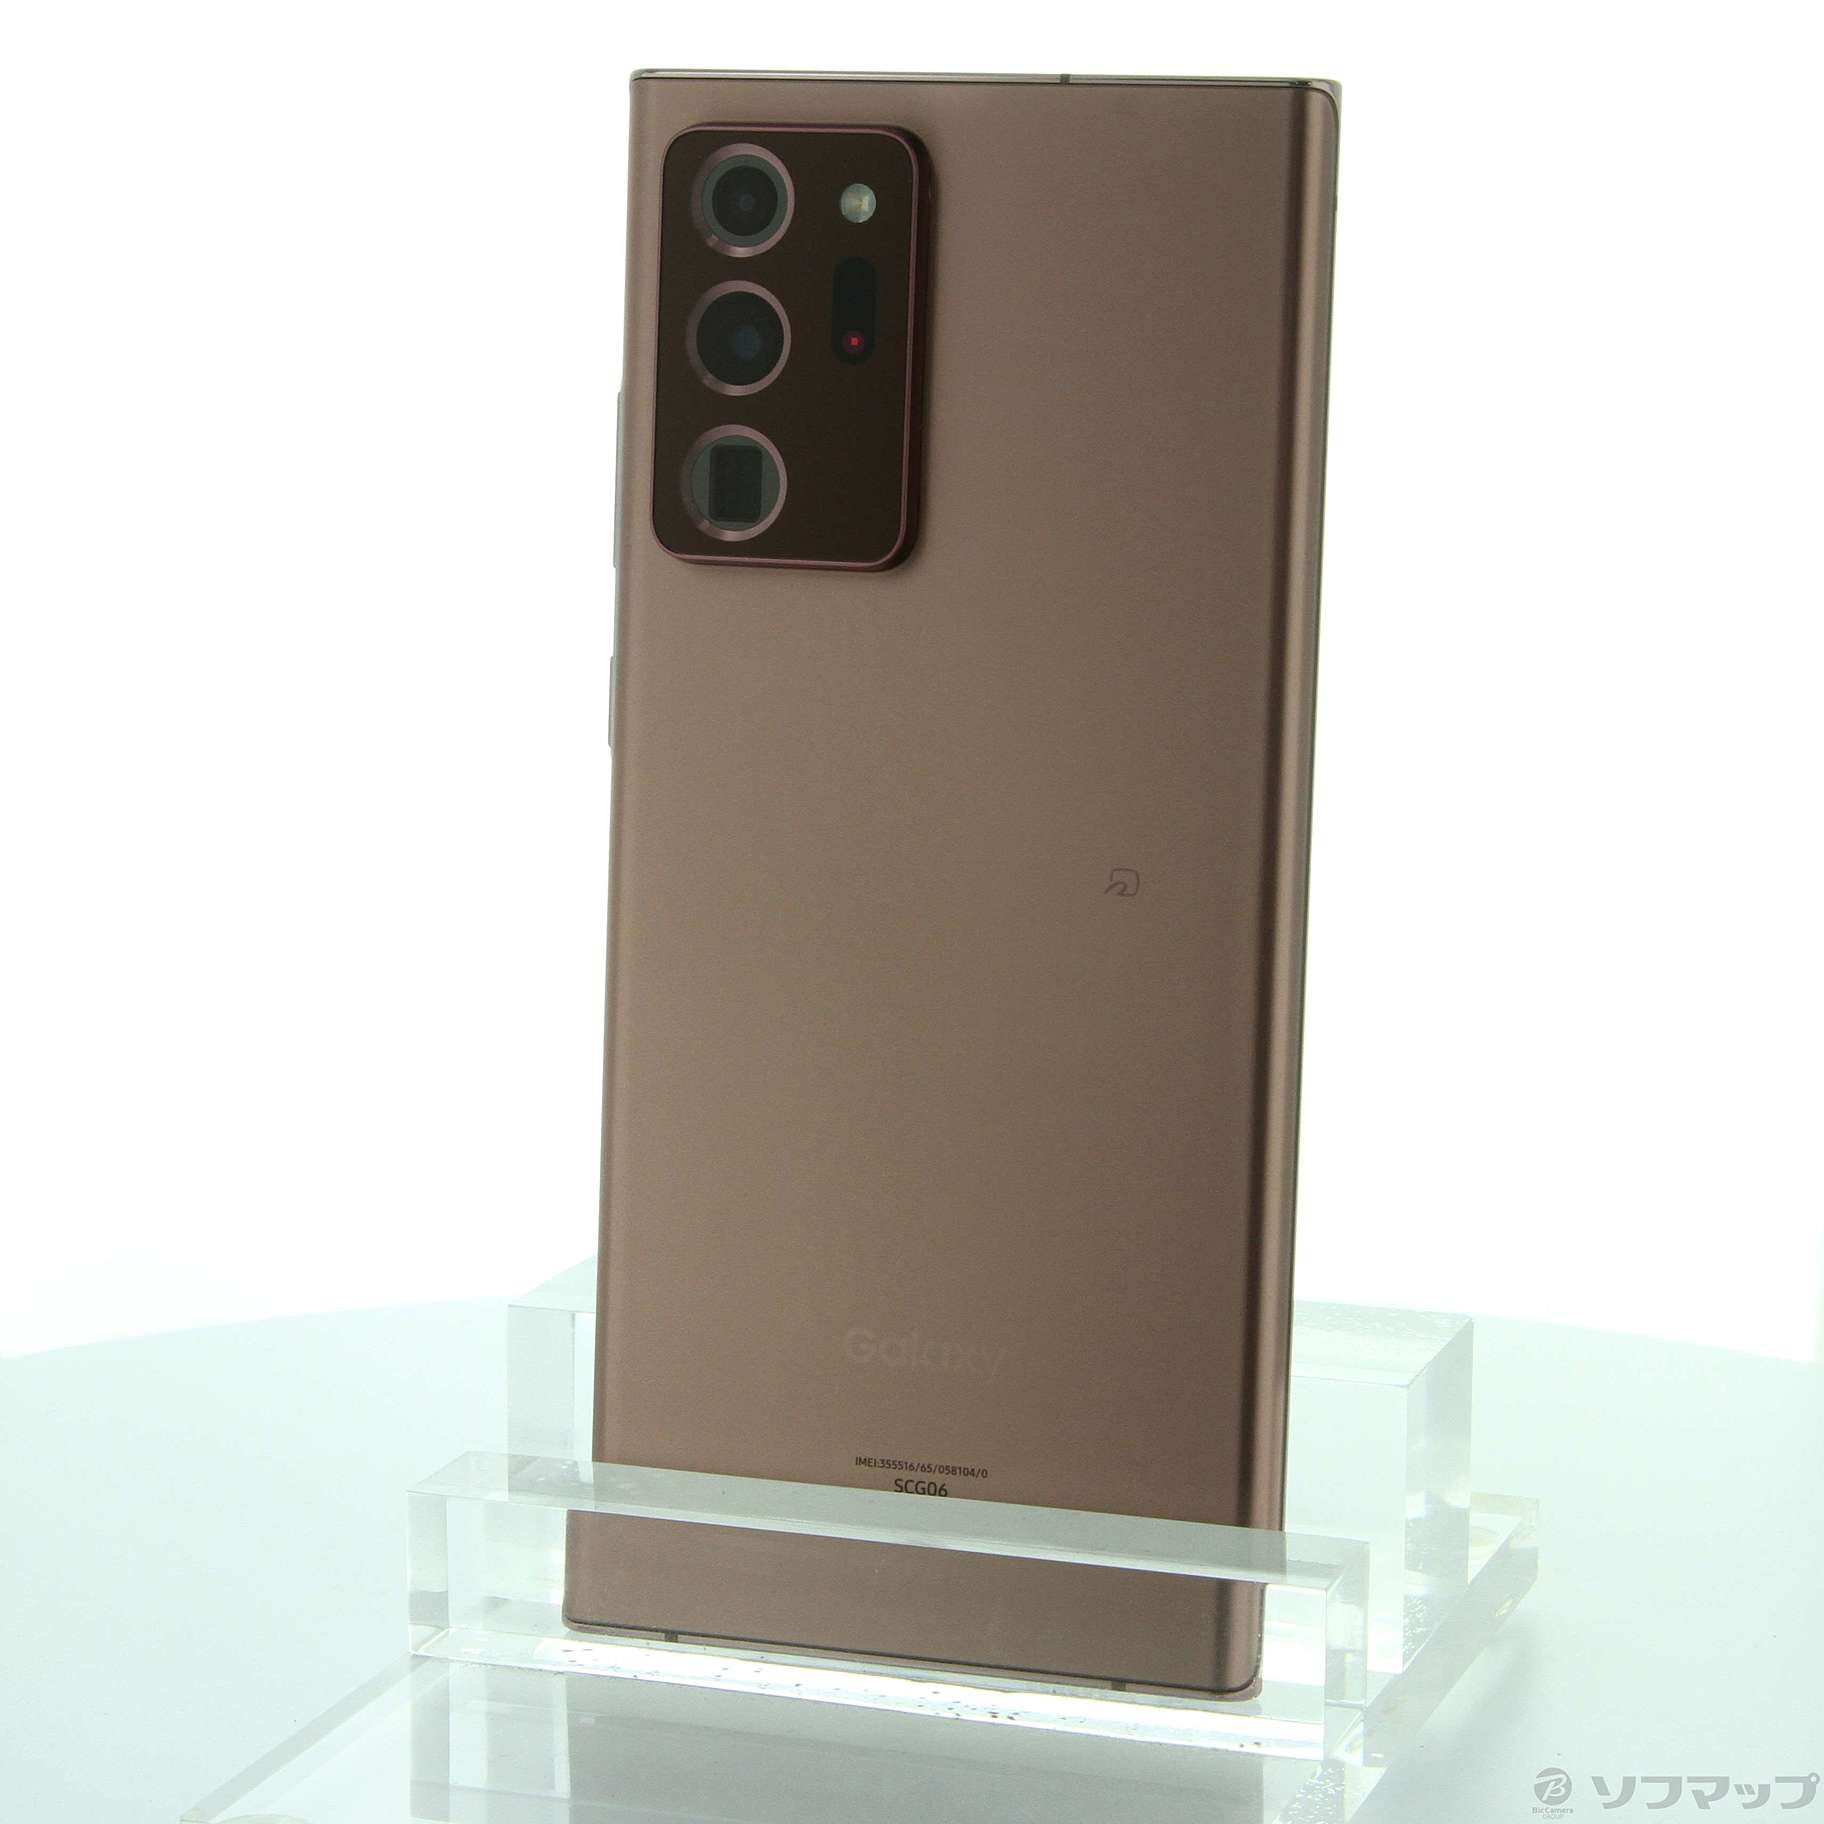 最高の品質の Galaxy Note20 5G 香港版 デュアルシム スマートフォン ...